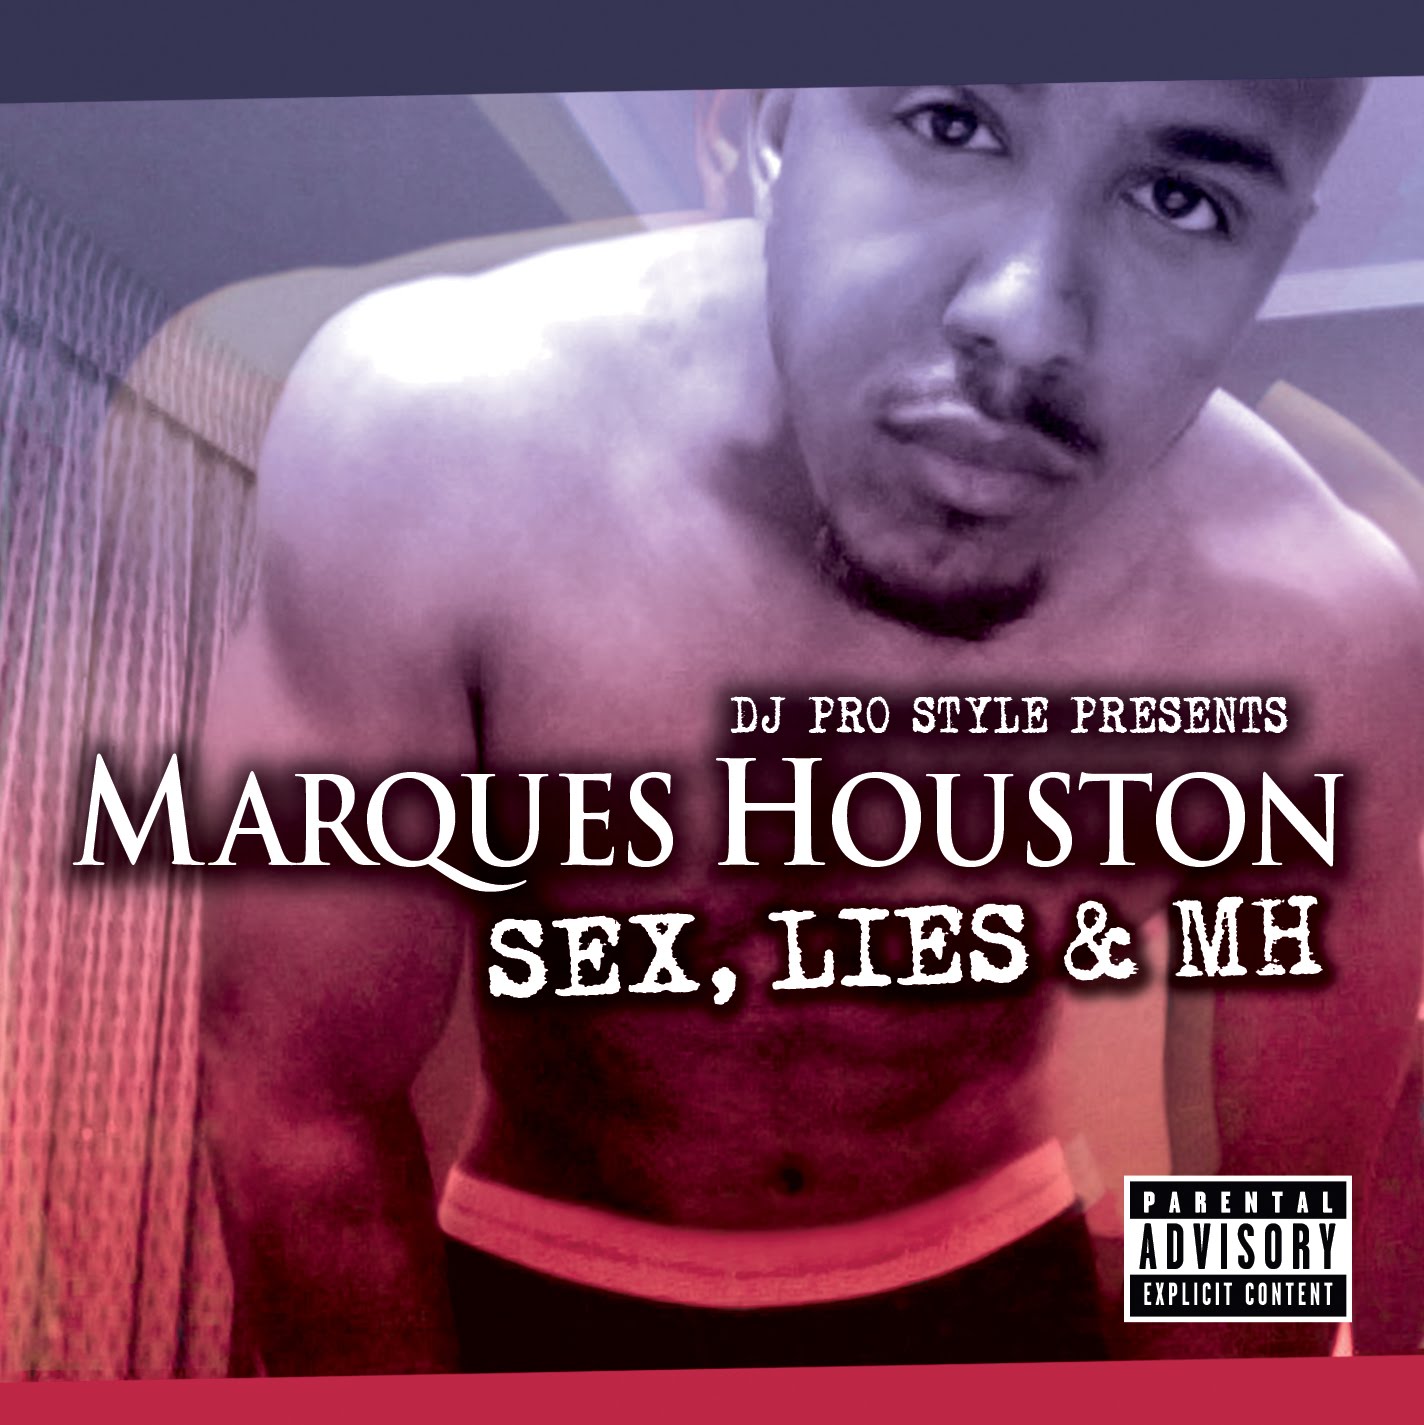 Mixtape: Marques Houston "Sex, Lies & MH" ThisisRnB.com - New...